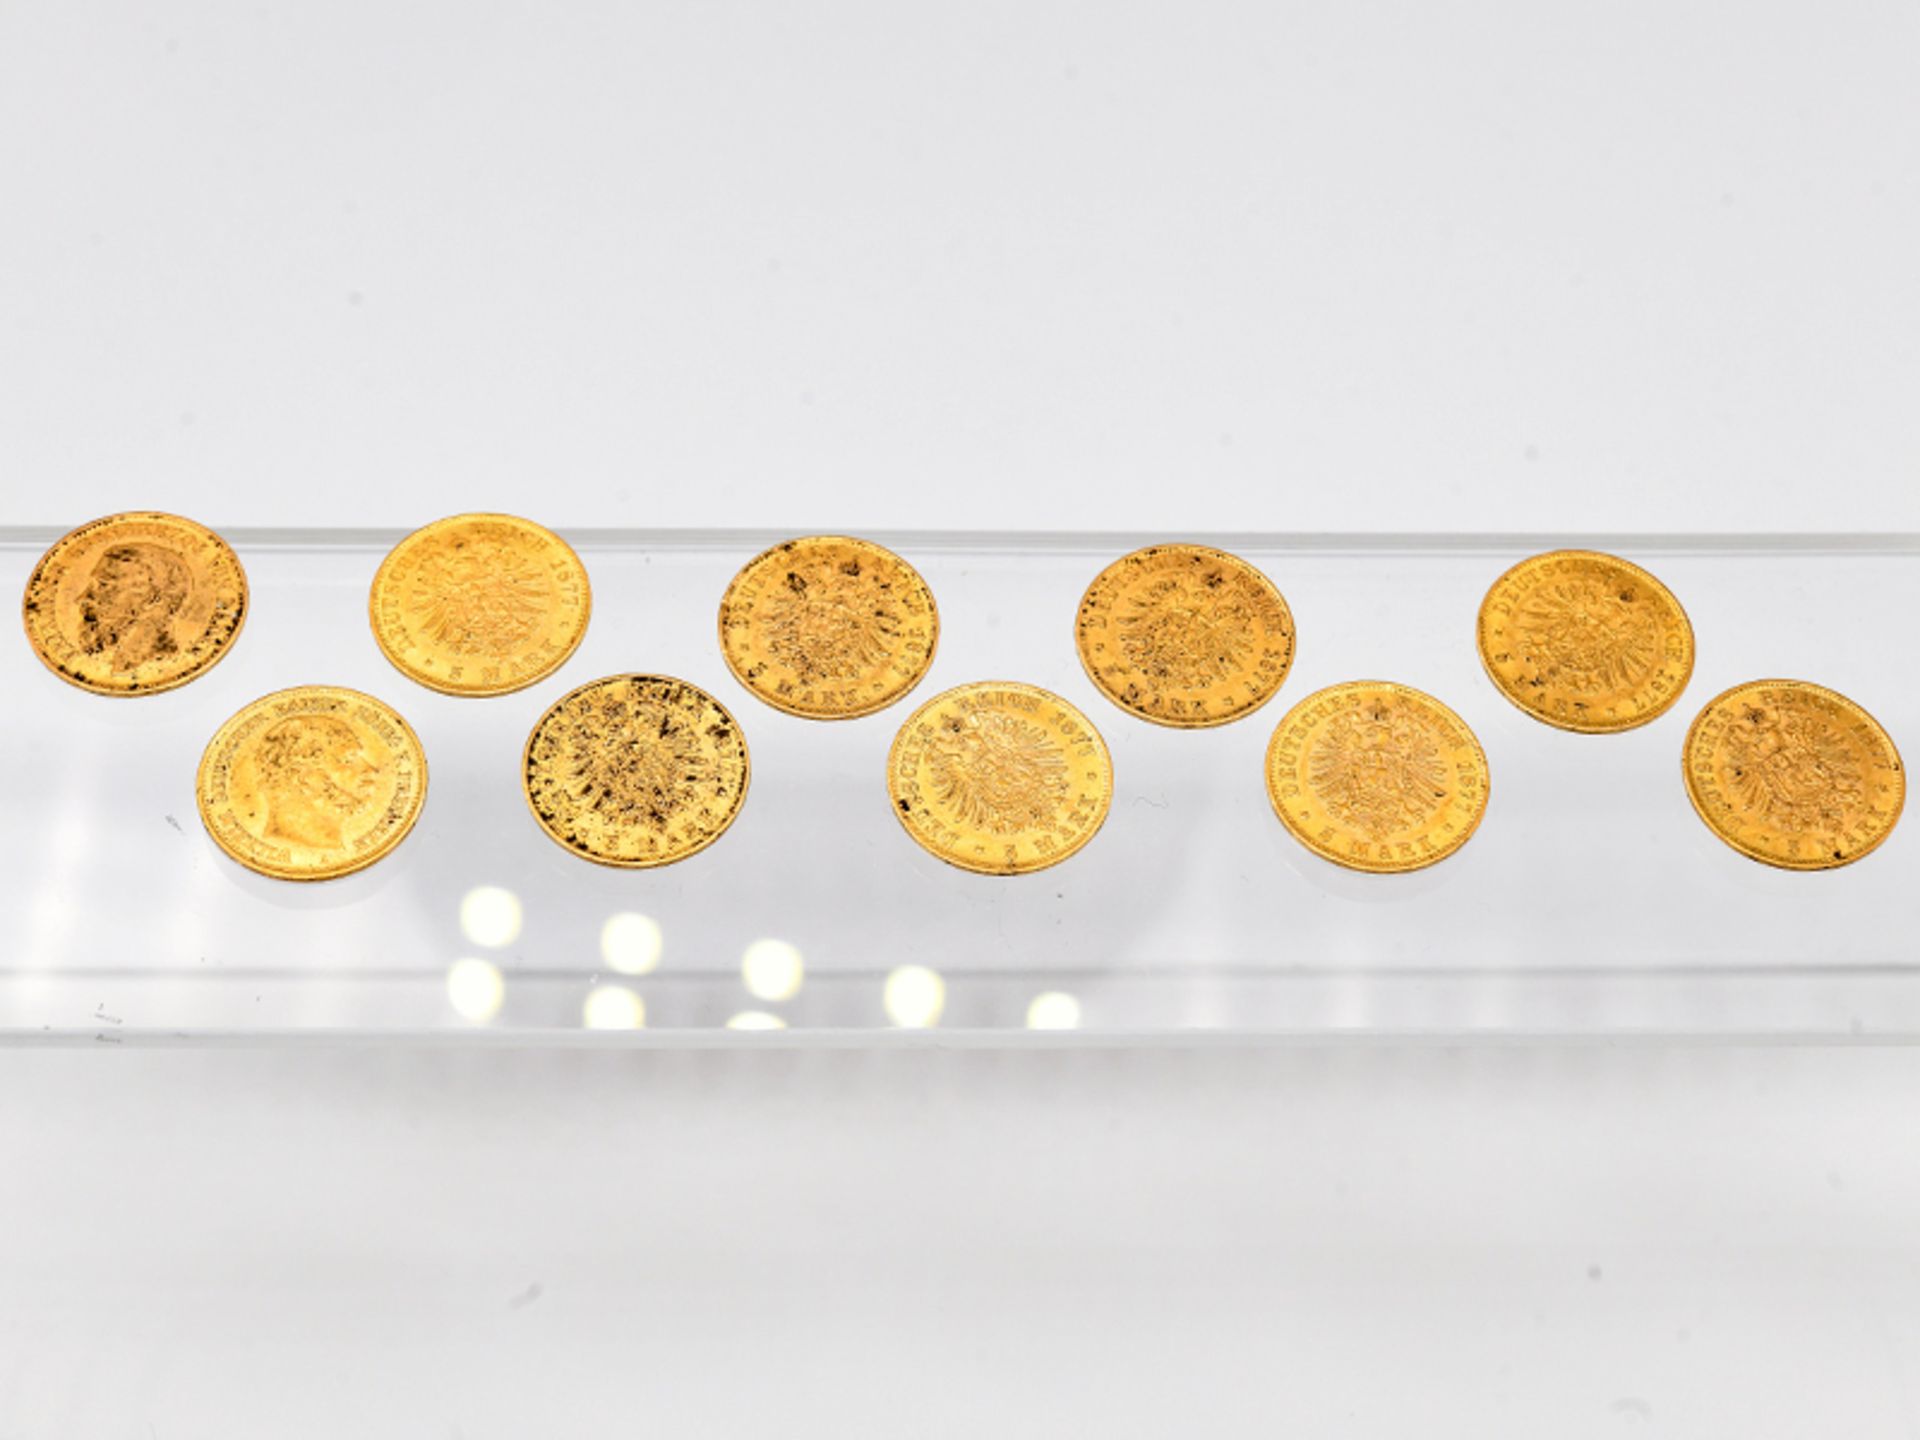 10 Goldmünzen "5 Mark", Deutsches Kaiserreich/Preußen, Sachsen, Bayern, Württemberg, Baden, Hamburg, - Bild 4 aus 8